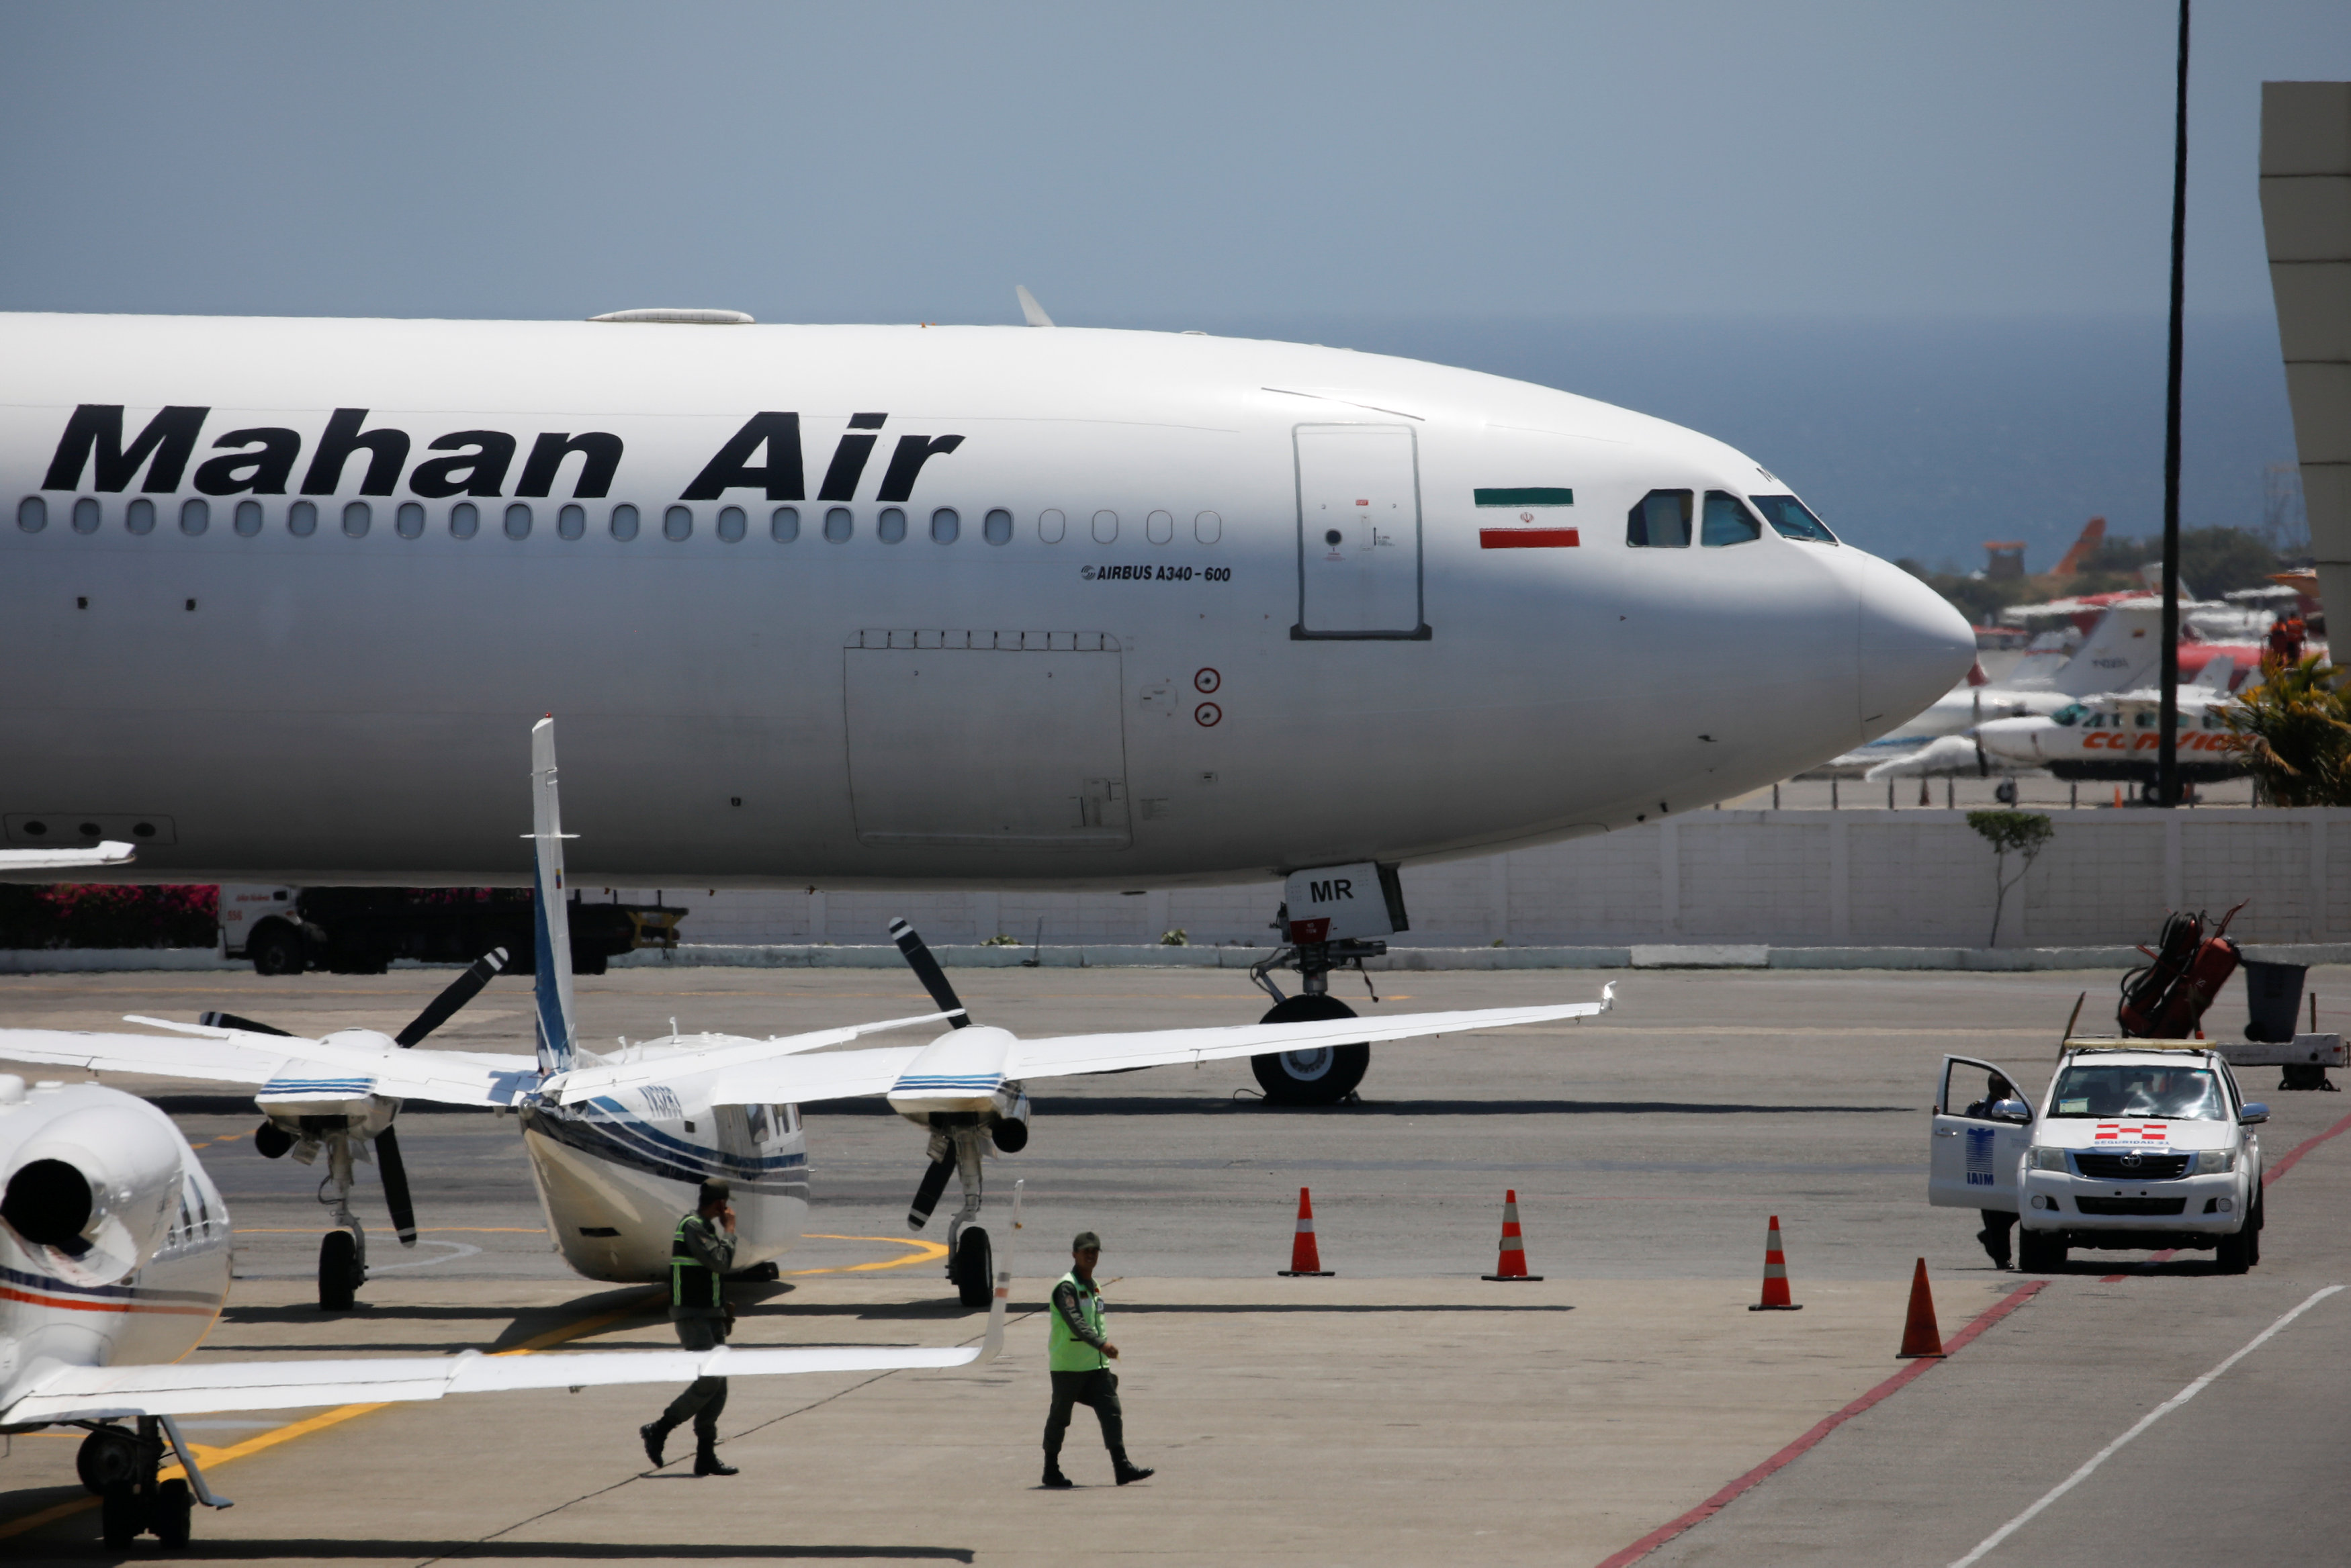 Tesoro de EEUU sancionó a empresa china por negocios con Mahan Air, aerolínea vinculada a Maduro